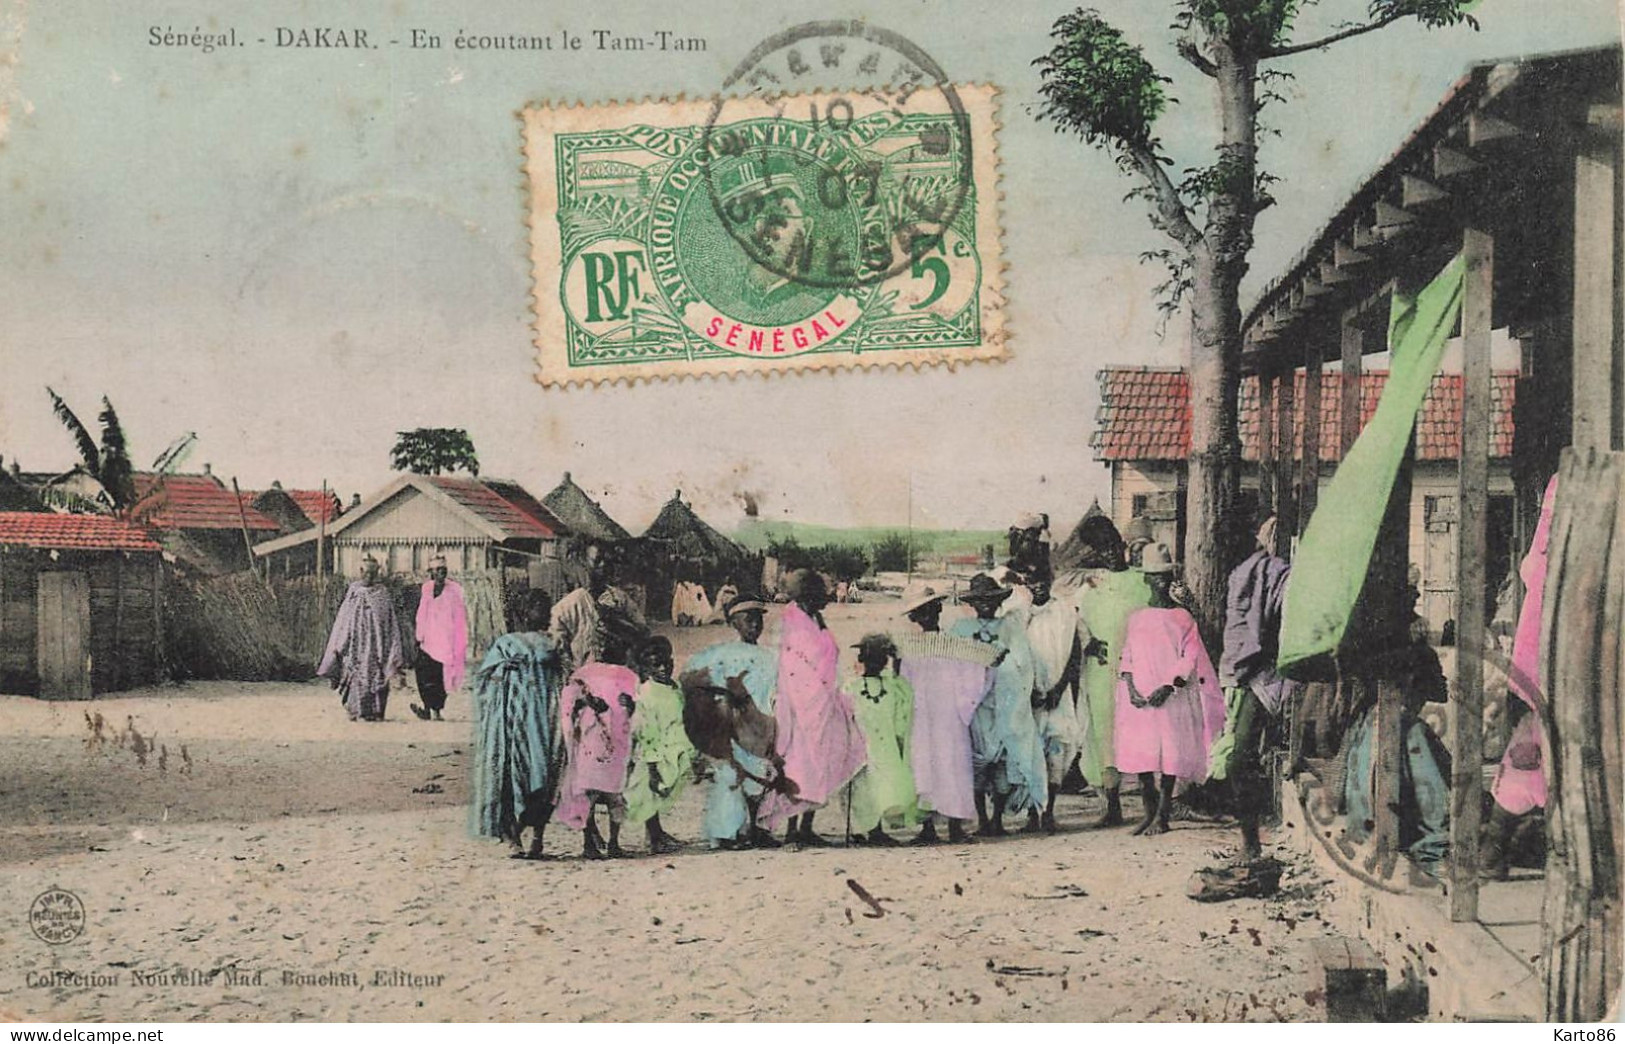 Dakar , Sénégal * 1907 * En écoutant Le Tam Tam * Musique Musiciens * éthnique Ethno Ethnic - Senegal